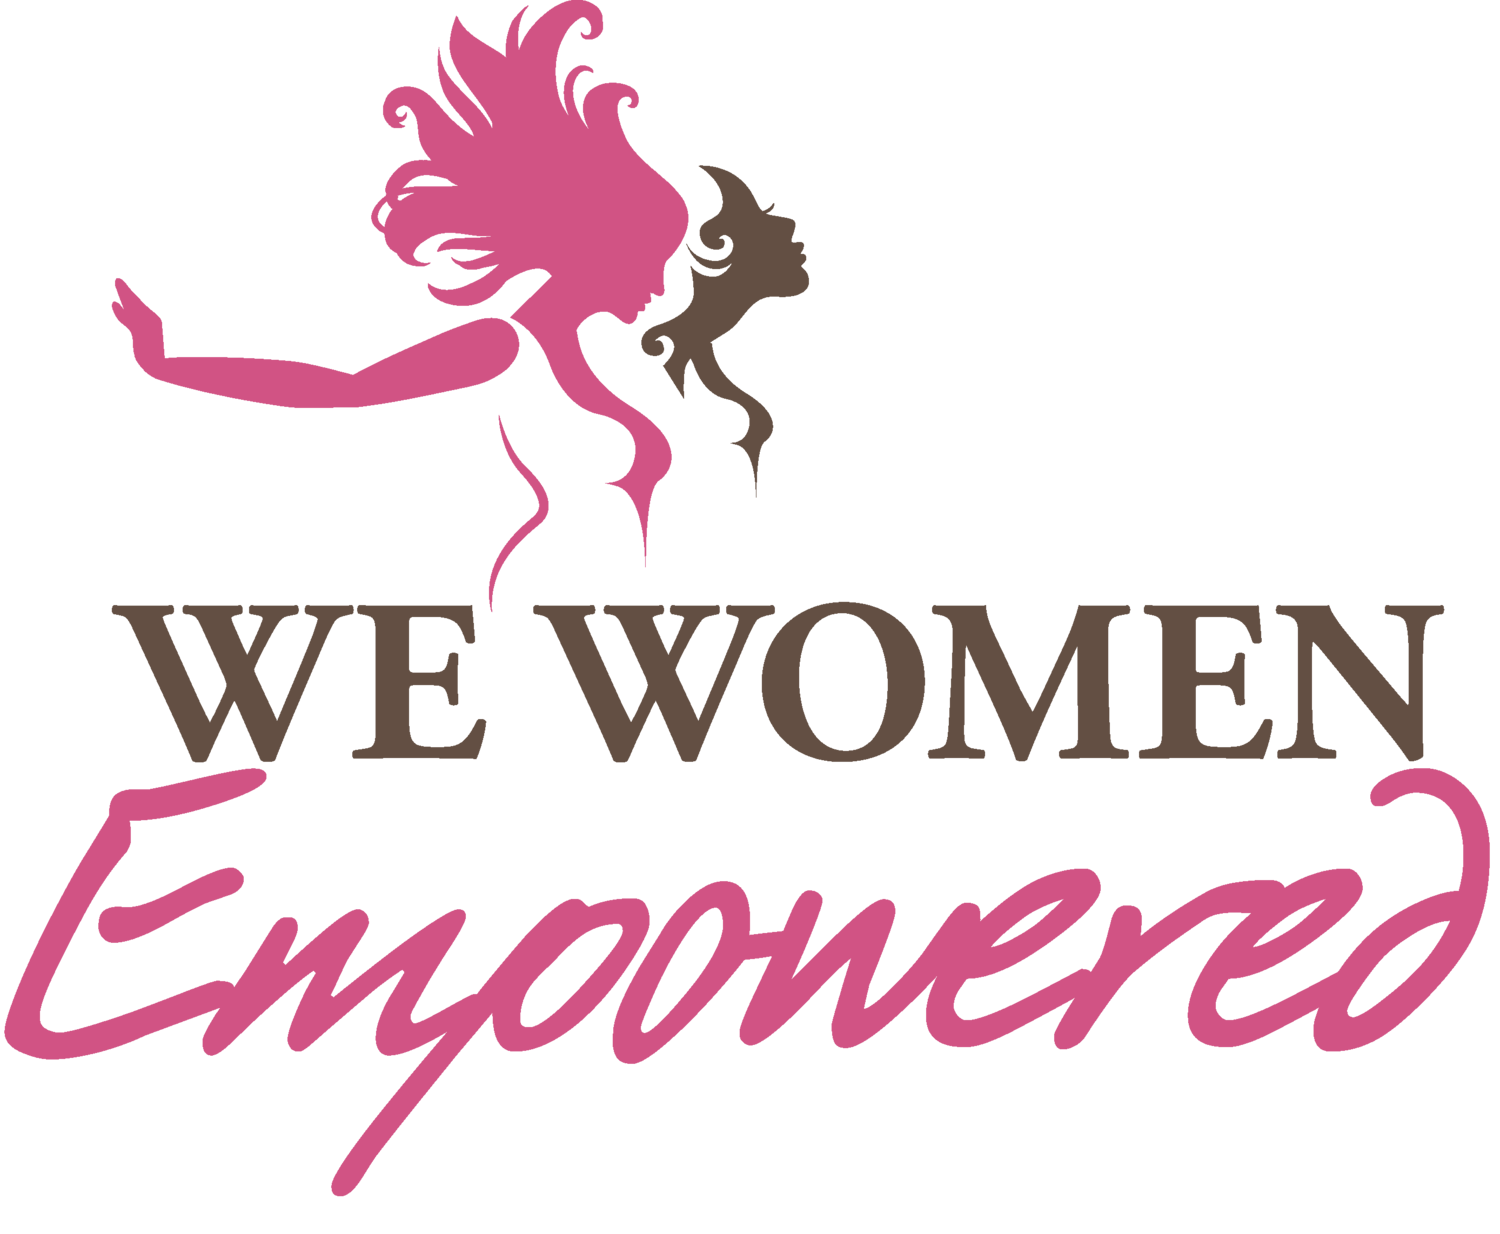 We Women Empowered